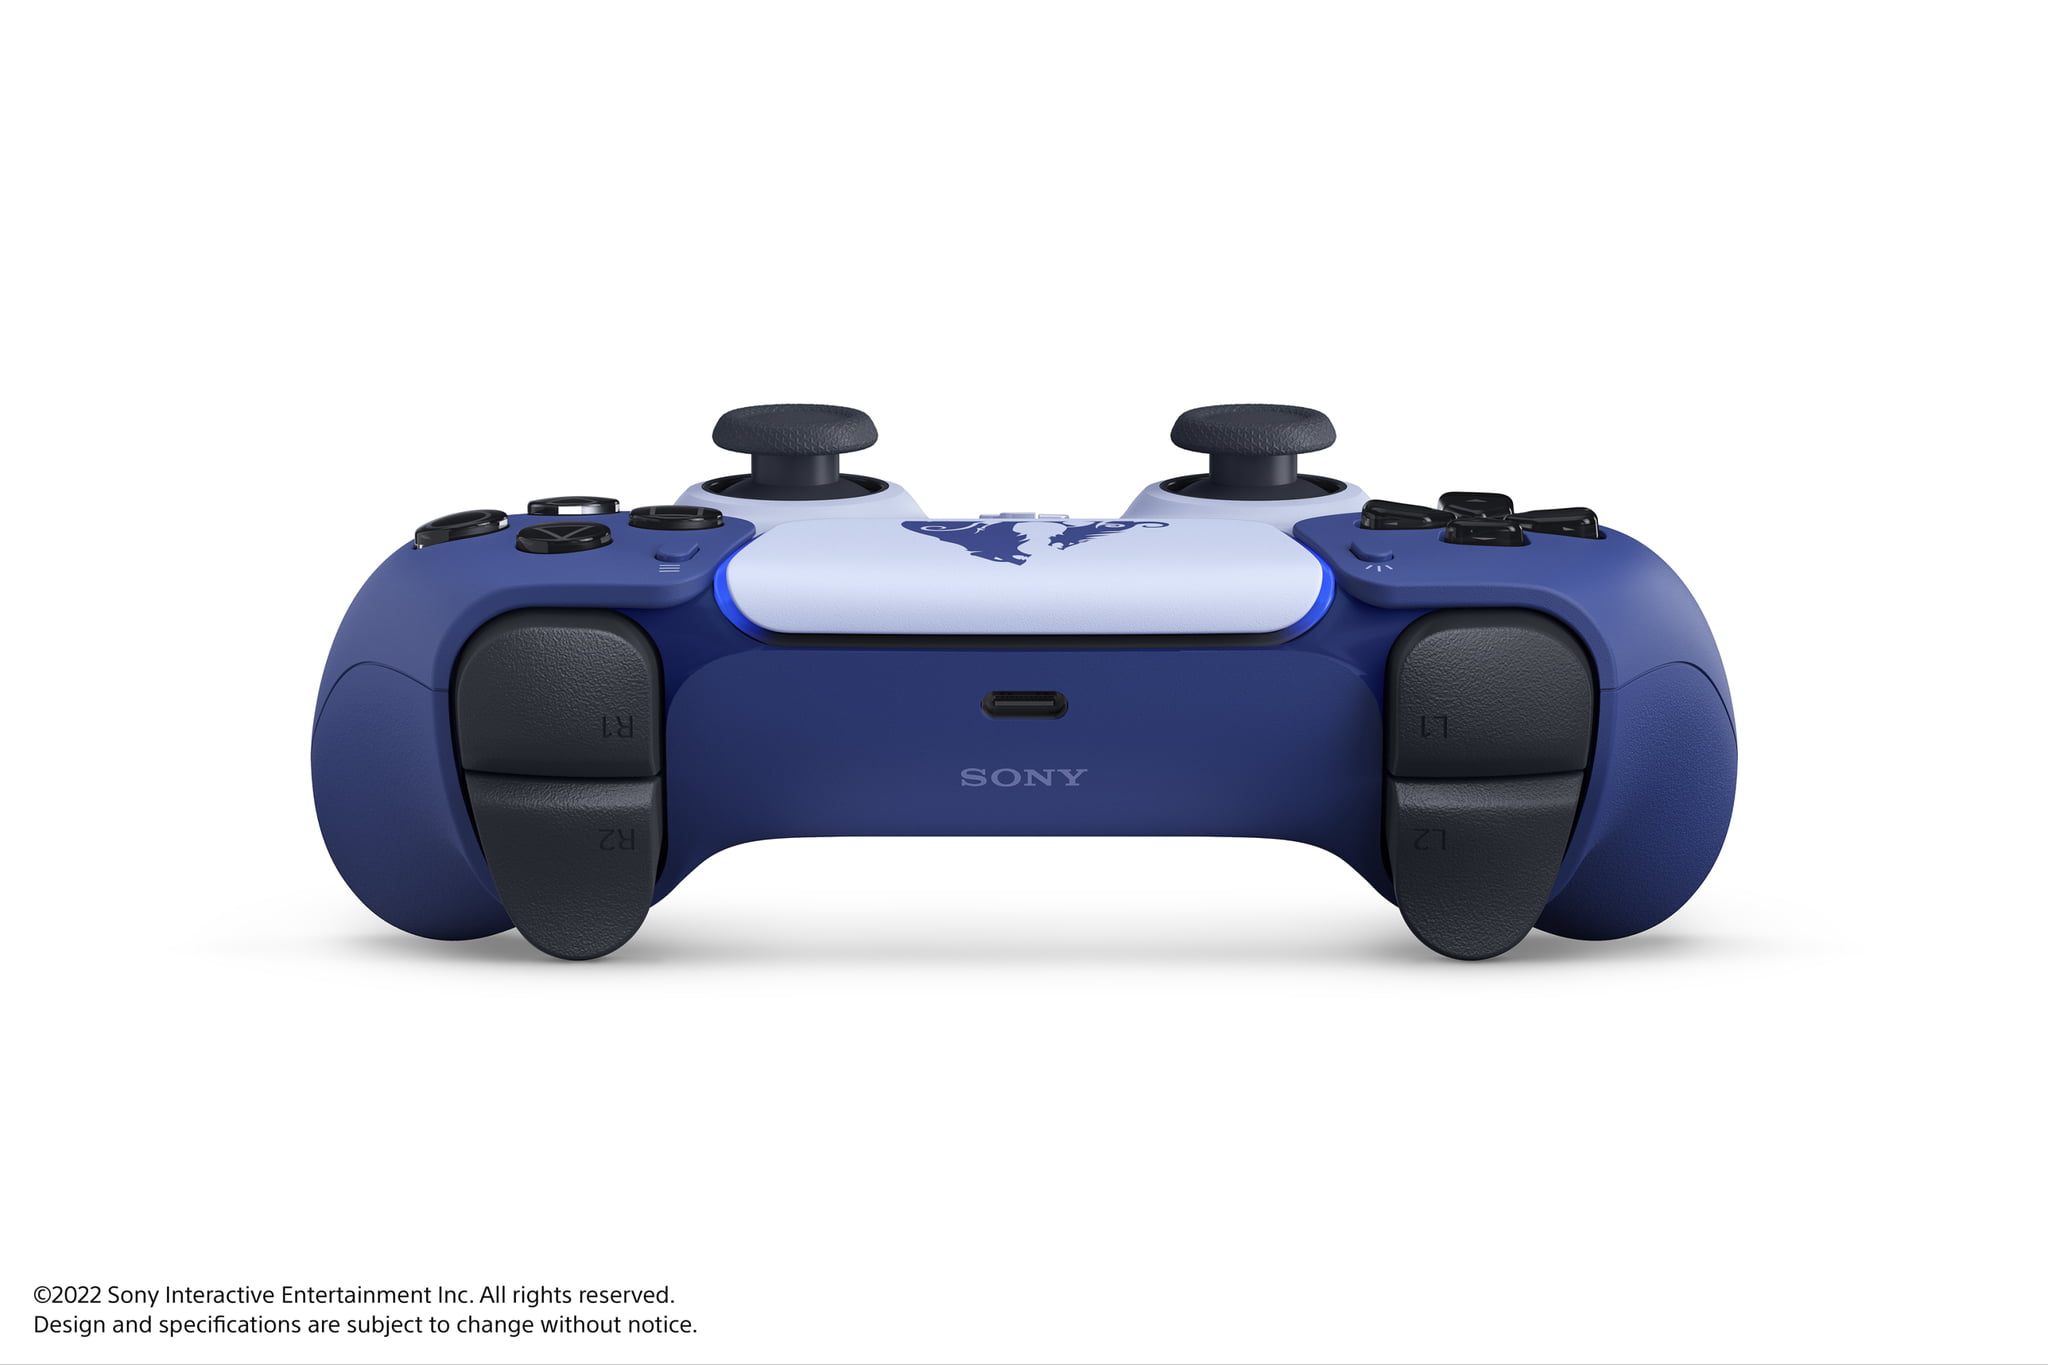 Sony Original God Of War PS5 Controller For PlayStation 5 – Stark Setup